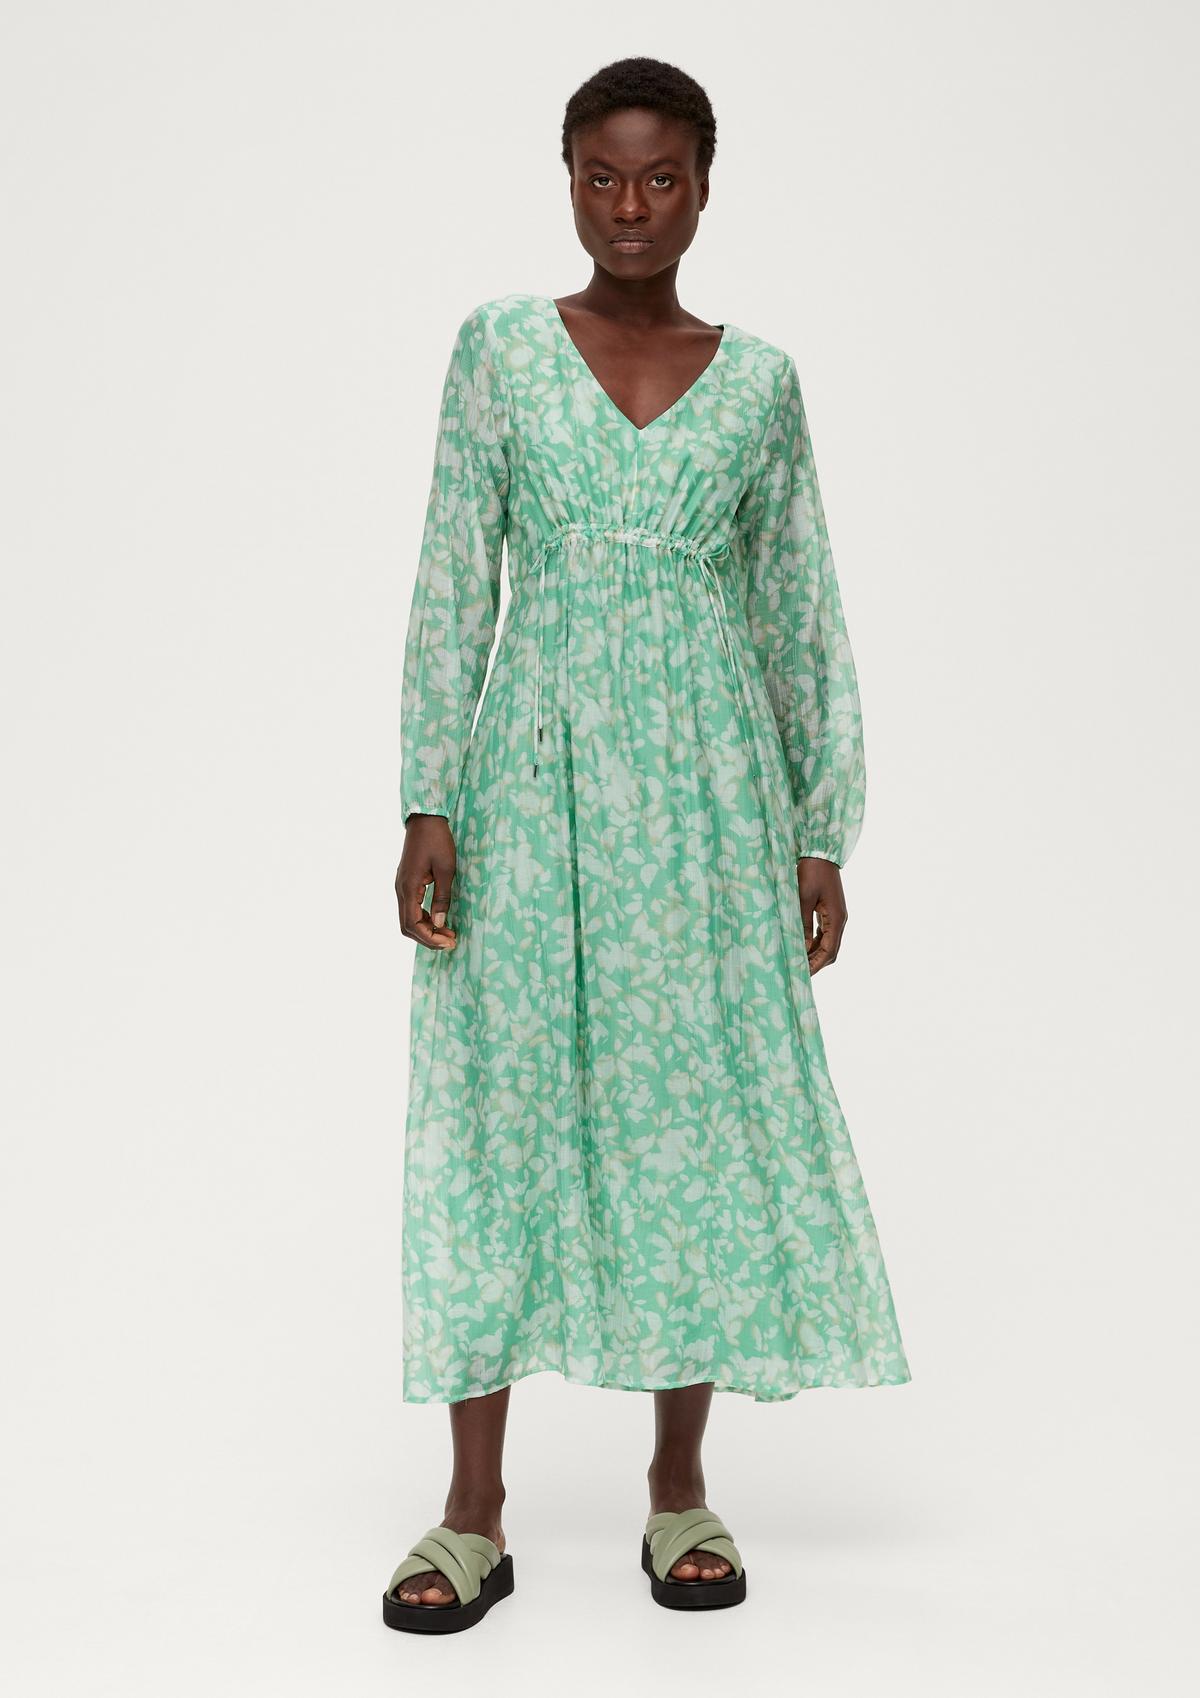 Shop maxi dresses for women online now